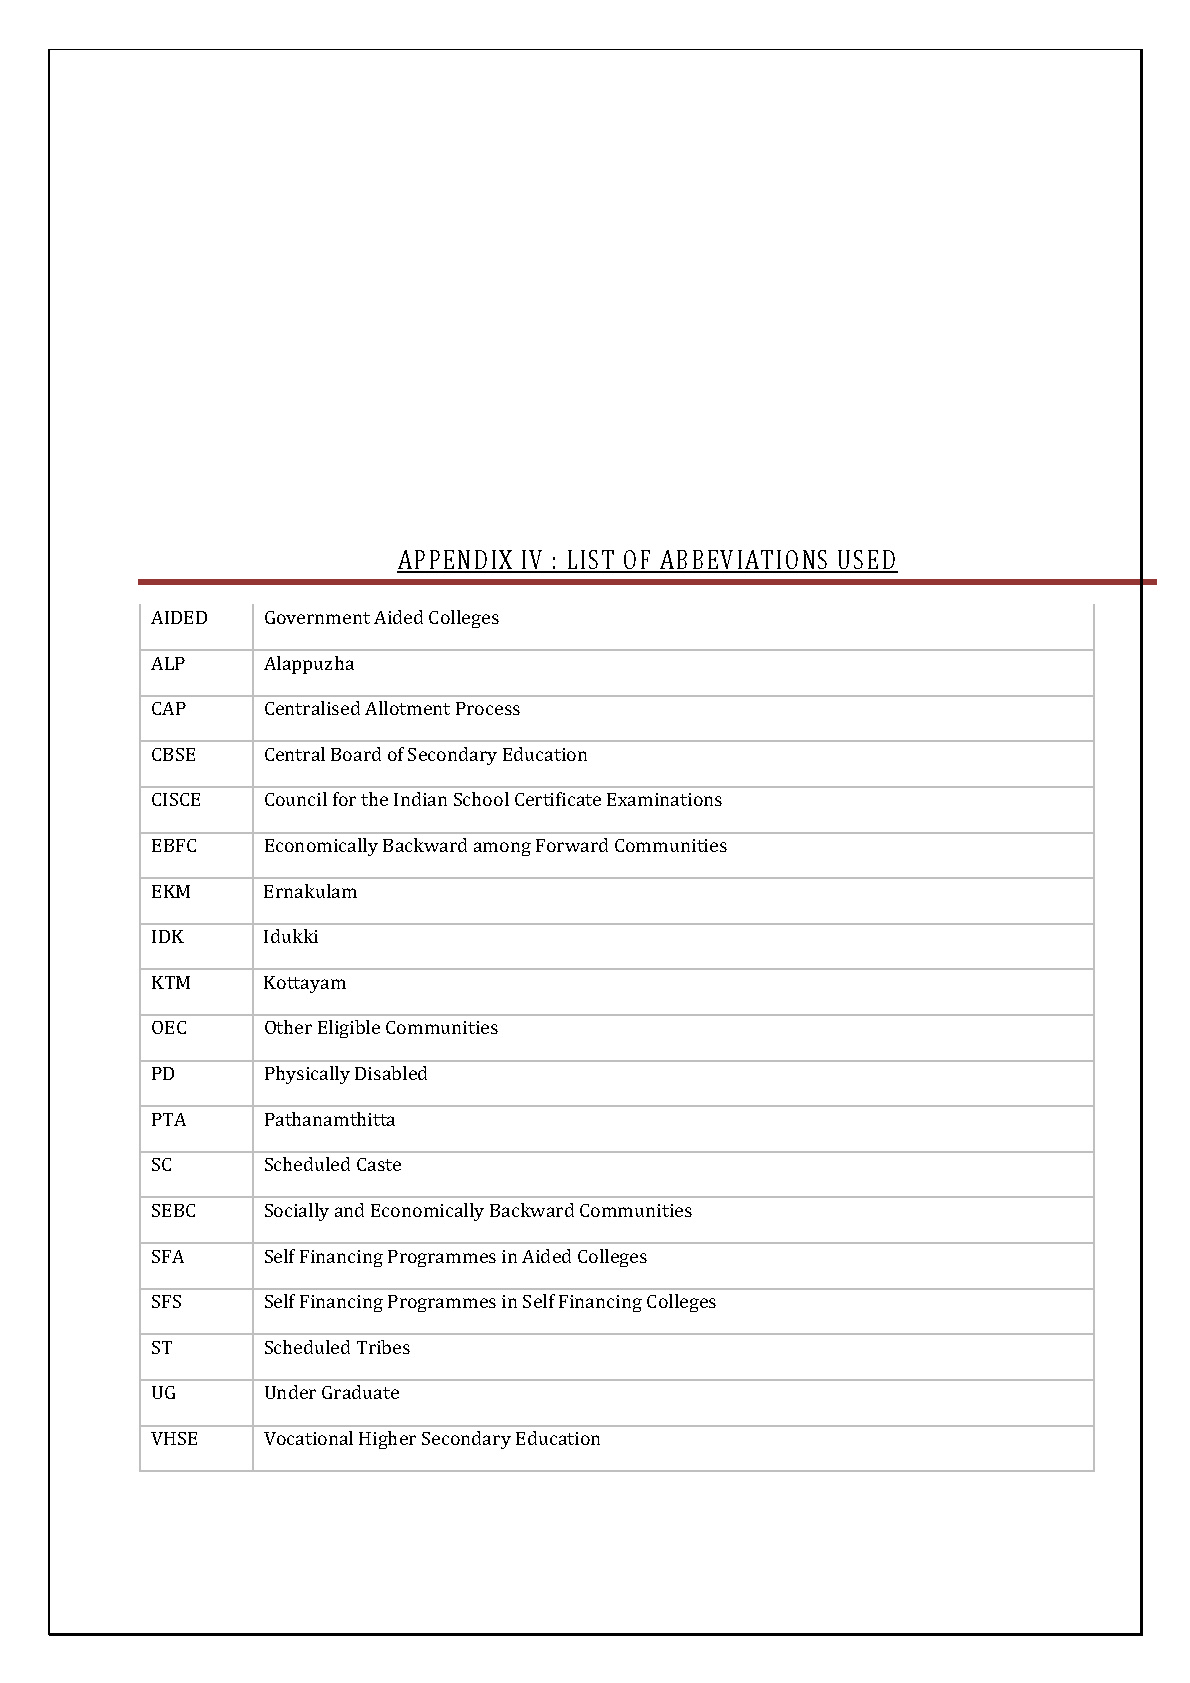 Mahatma Gandhi University Kerala UG Admission 2019 - Notification Image 79